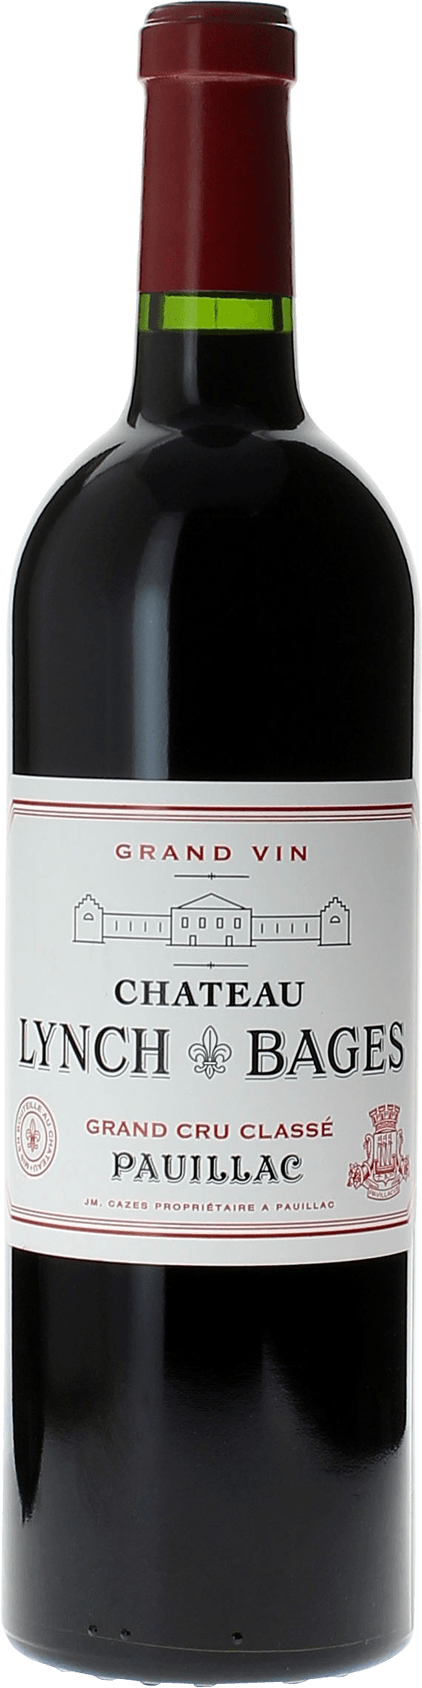 Lynch bages 2012 5 me Grand cru class Pauillac, Bordeaux rouge